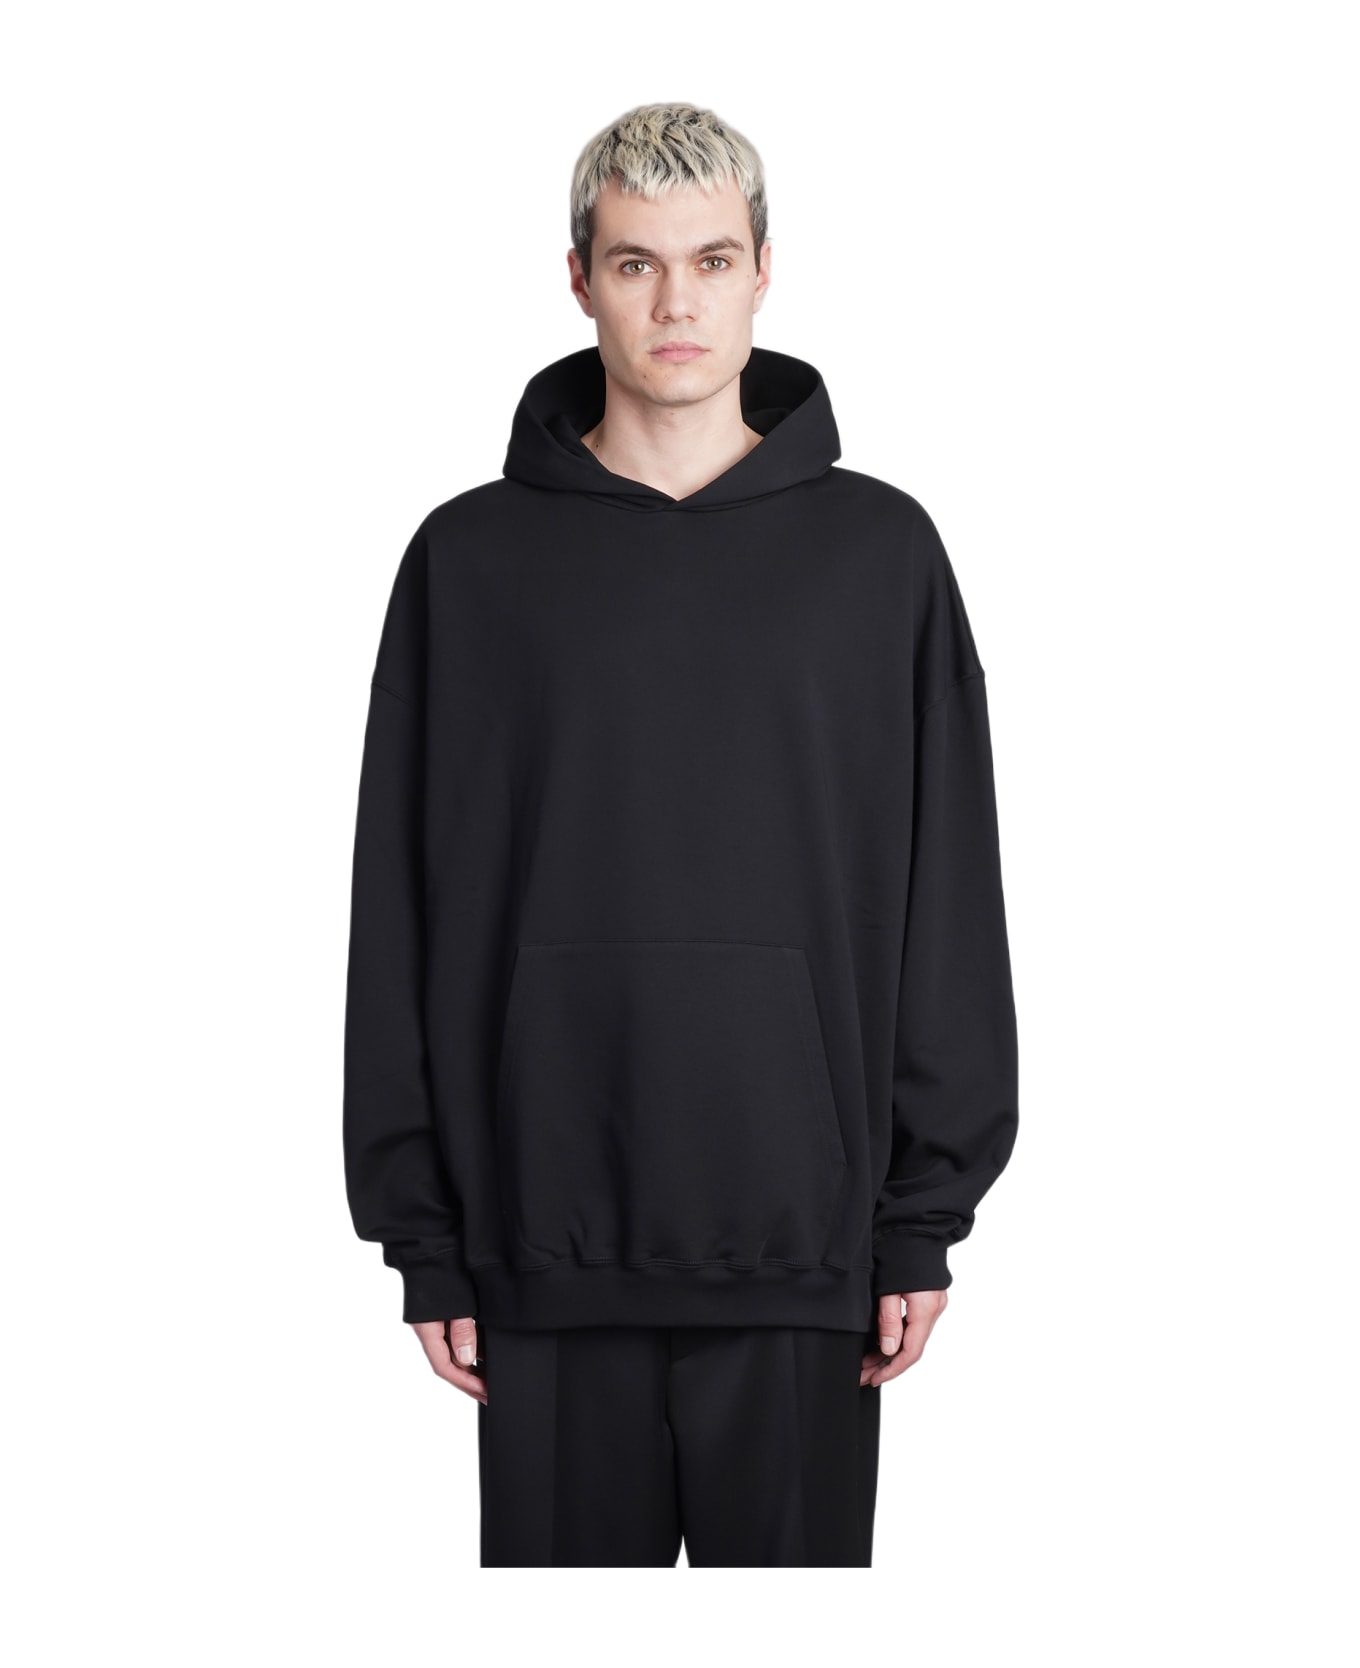 Balenciaga Sweatshirt In Black Cotton - black